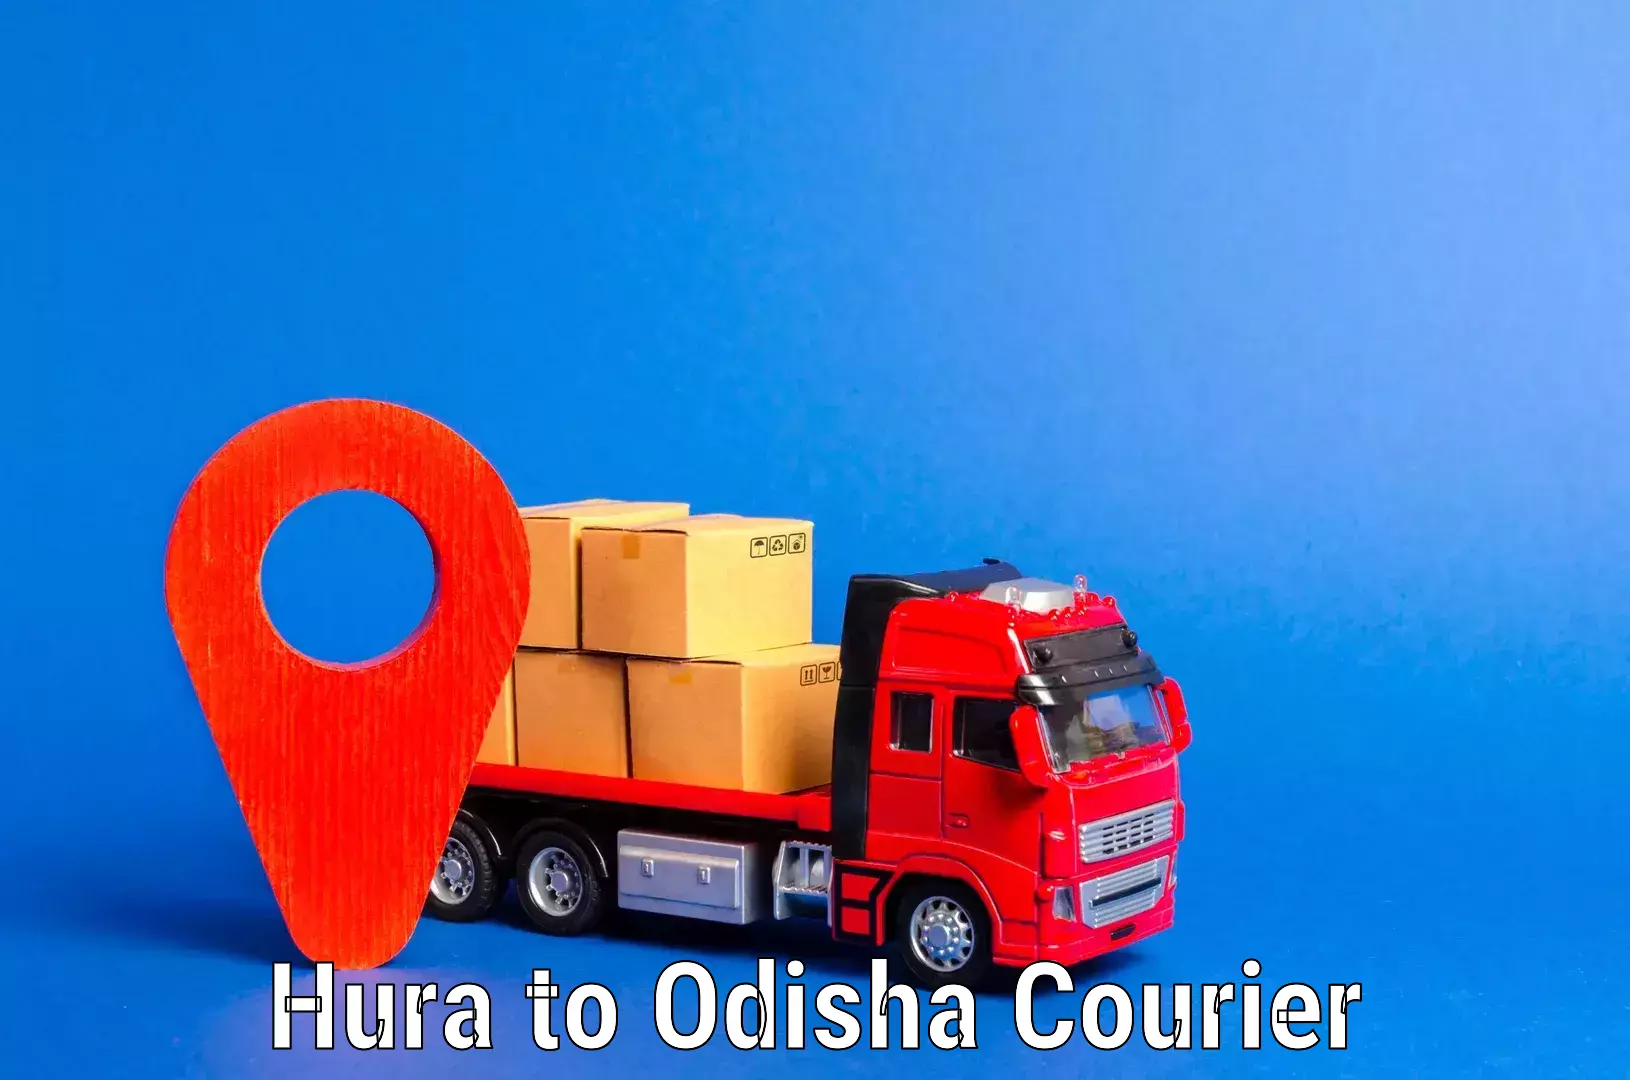 Efficient moving company Hura to Odisha